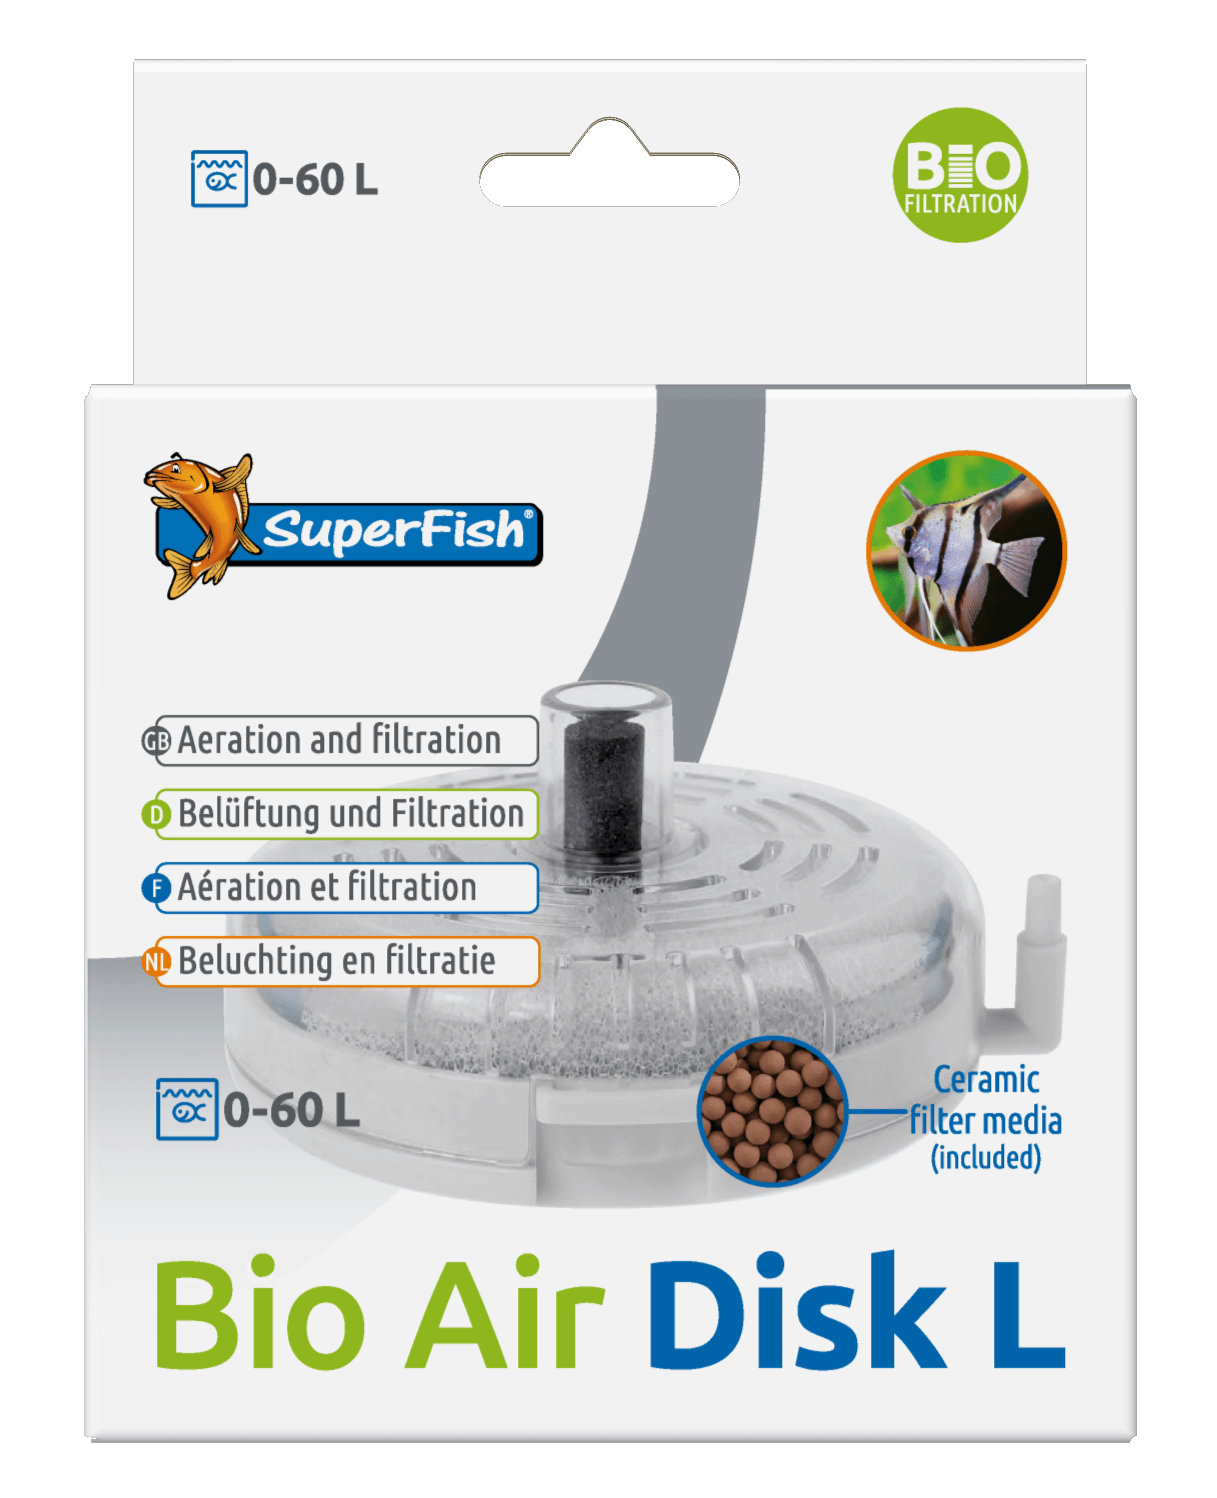 SUPERFISH BioAir Filter L - Filtre exhausteur pour aquarium